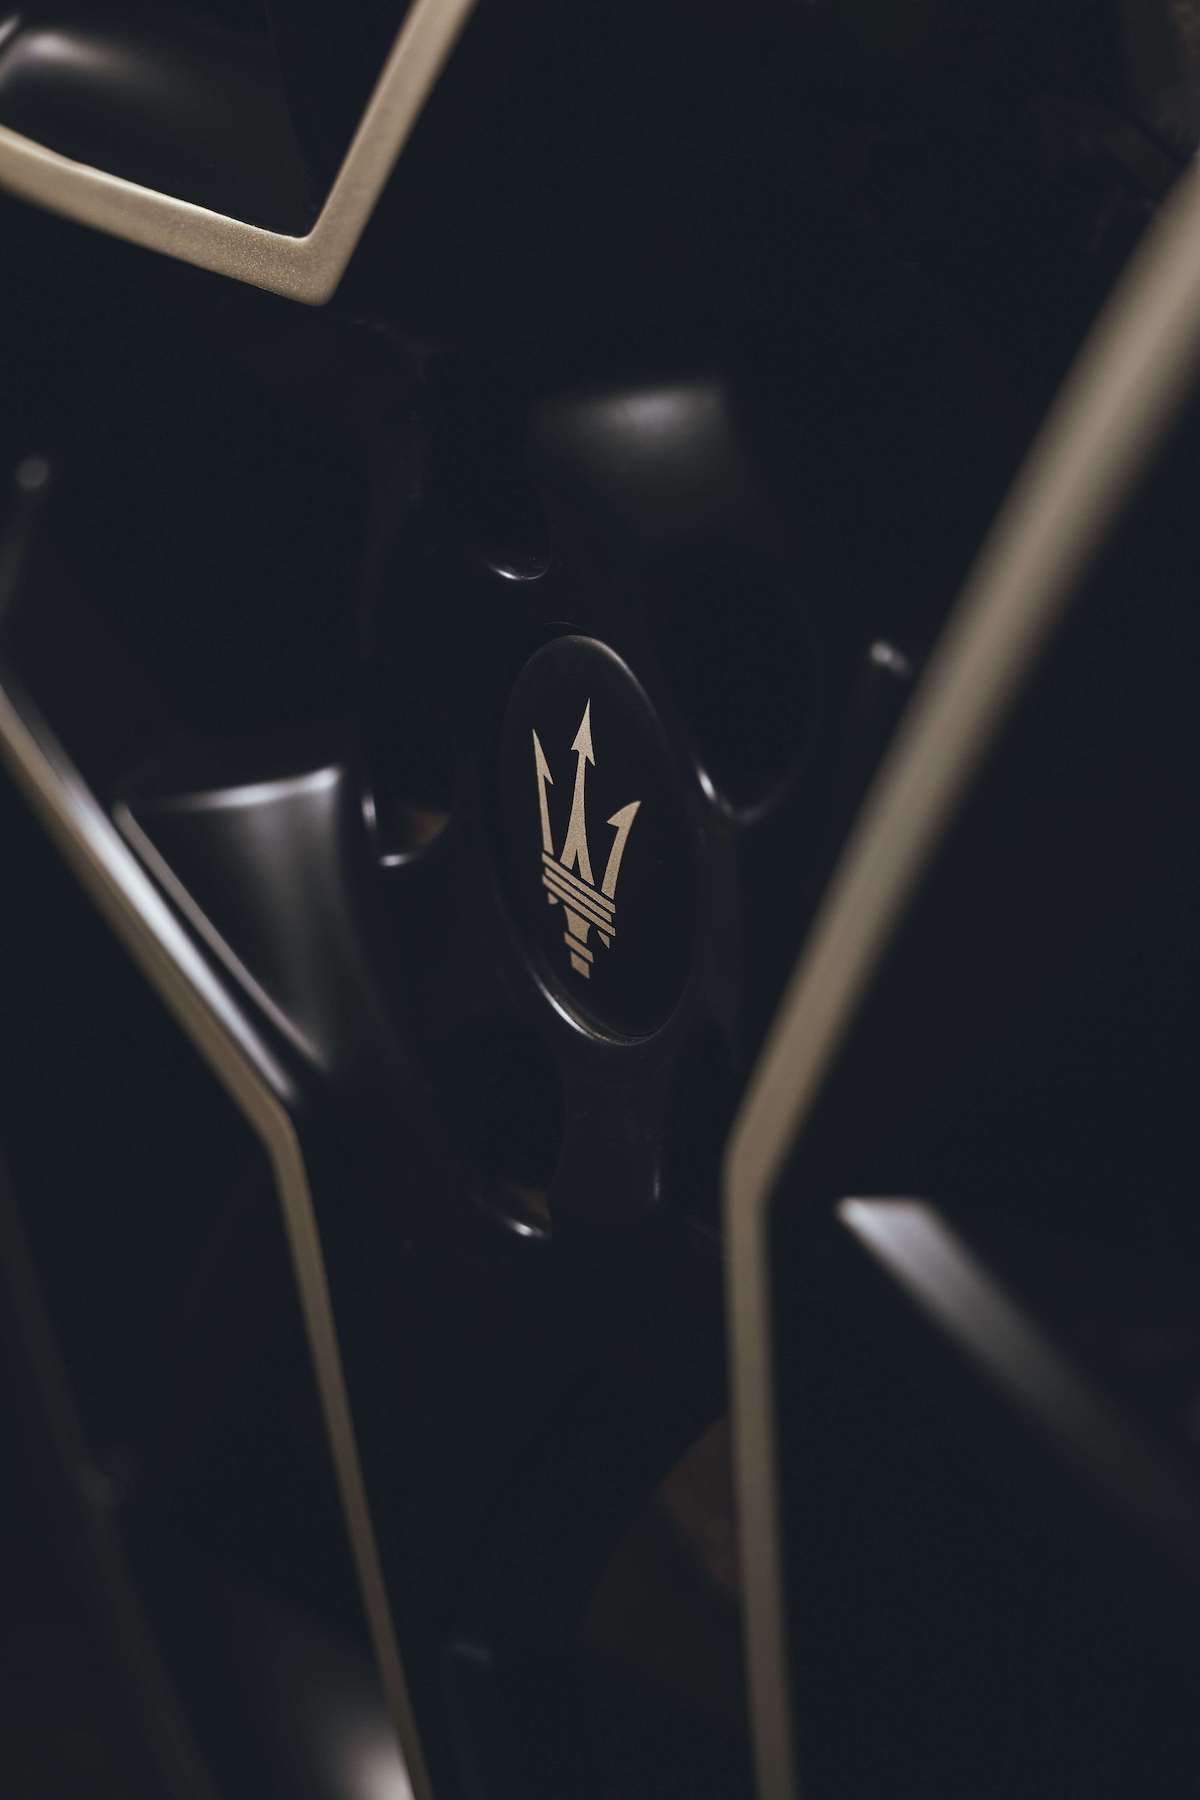 圖12-MC20 Notte 採用 20 吋消光黑「鳥籠」（Birdcage）輪圈，勾勒出賽道專屬的超凡跑格，藉由消光白金色飾邊與黑色剎車卡鉗，於和諧中強化整體美學韻味.jpg